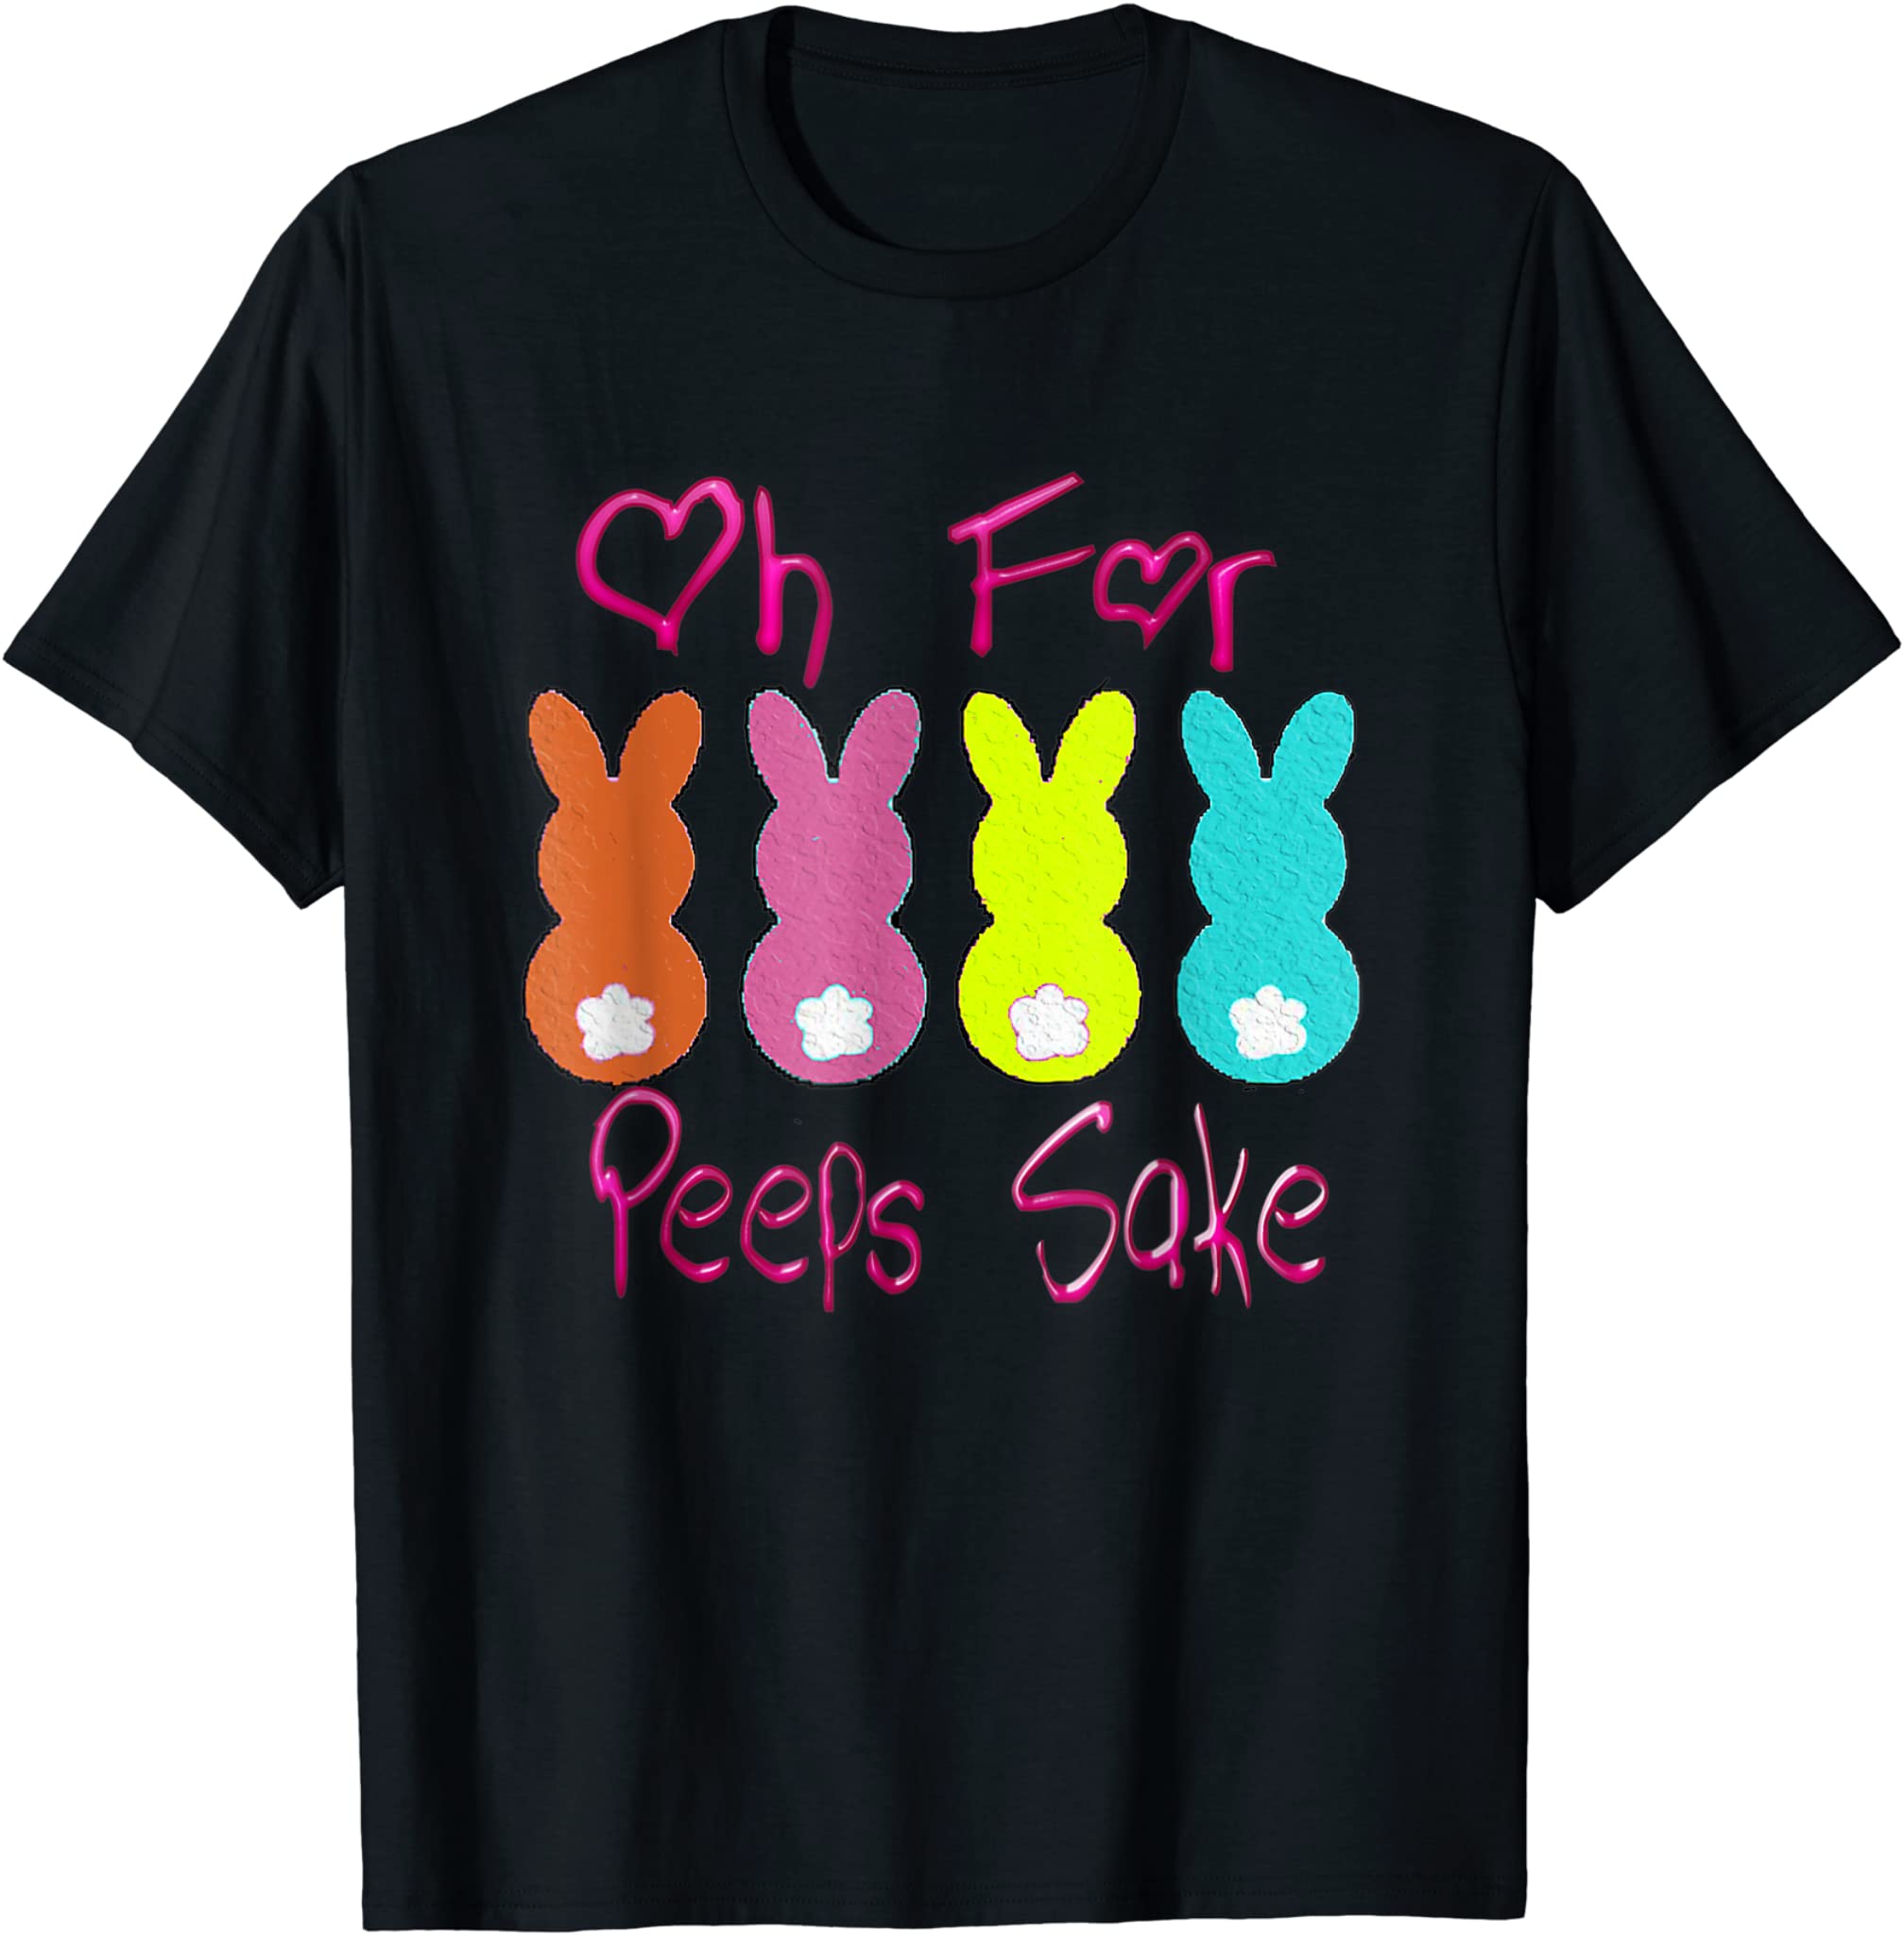 Oh For Peeps Sake,Peeps Funny Easter Day Gift T-Shirt